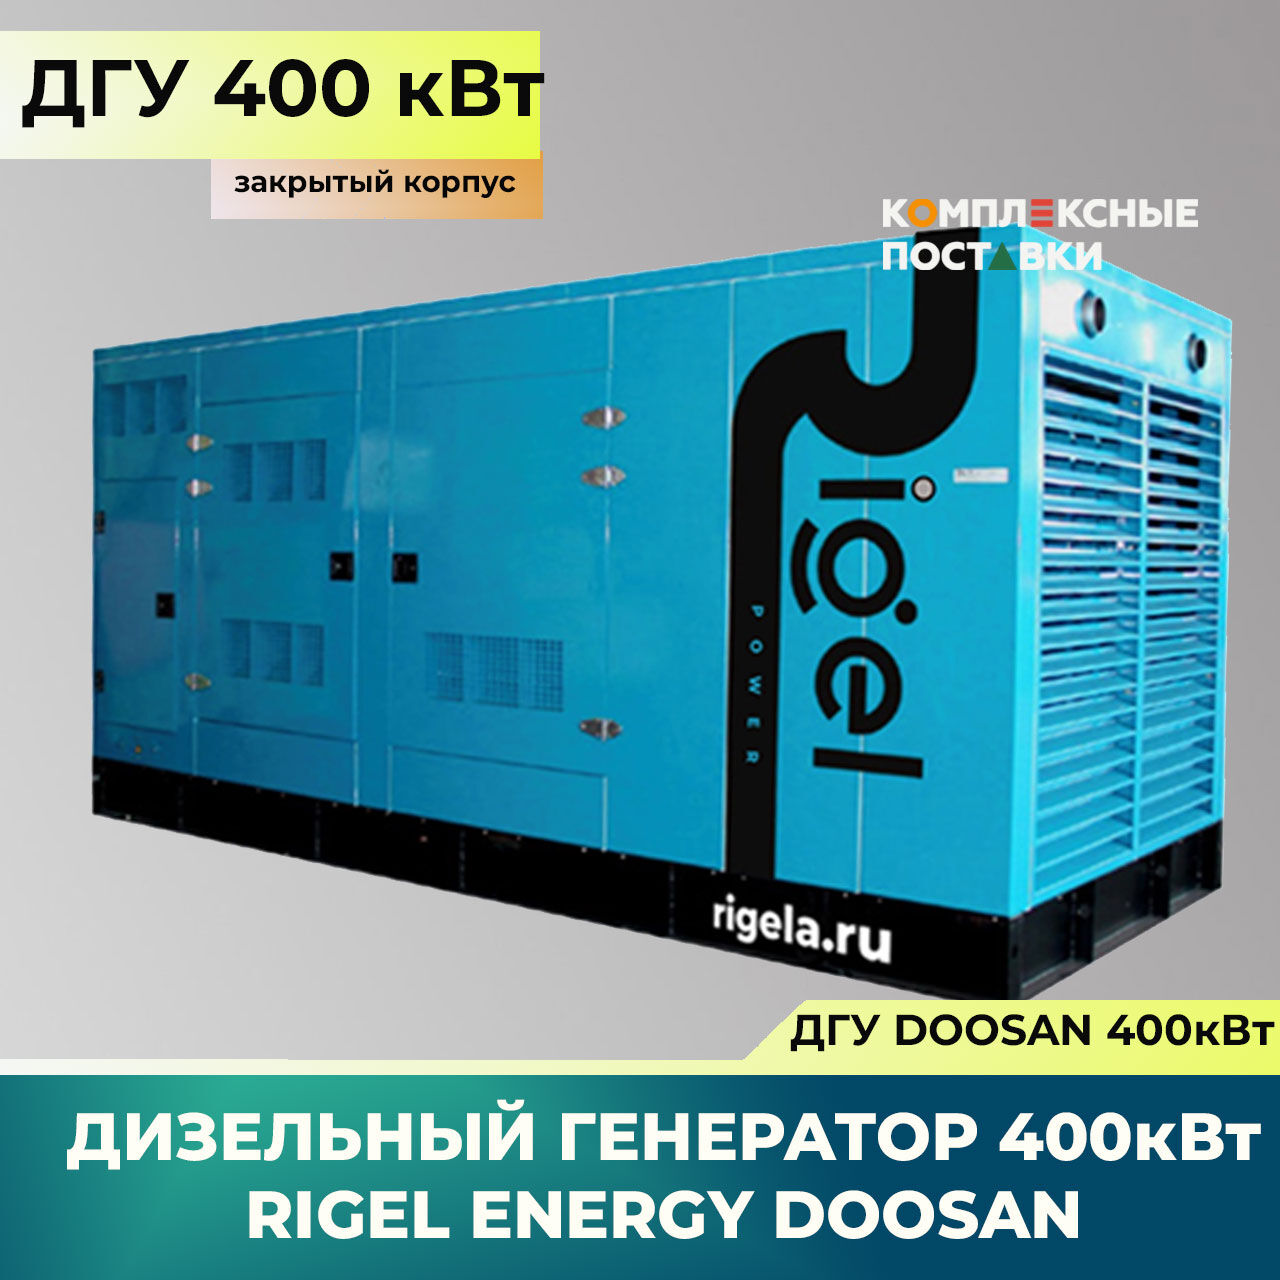 ДГУ 400кВт Doosan Дизель-генератор Rigel Energy Doosan RED 400 (400 кВт, Doosan) закрытый